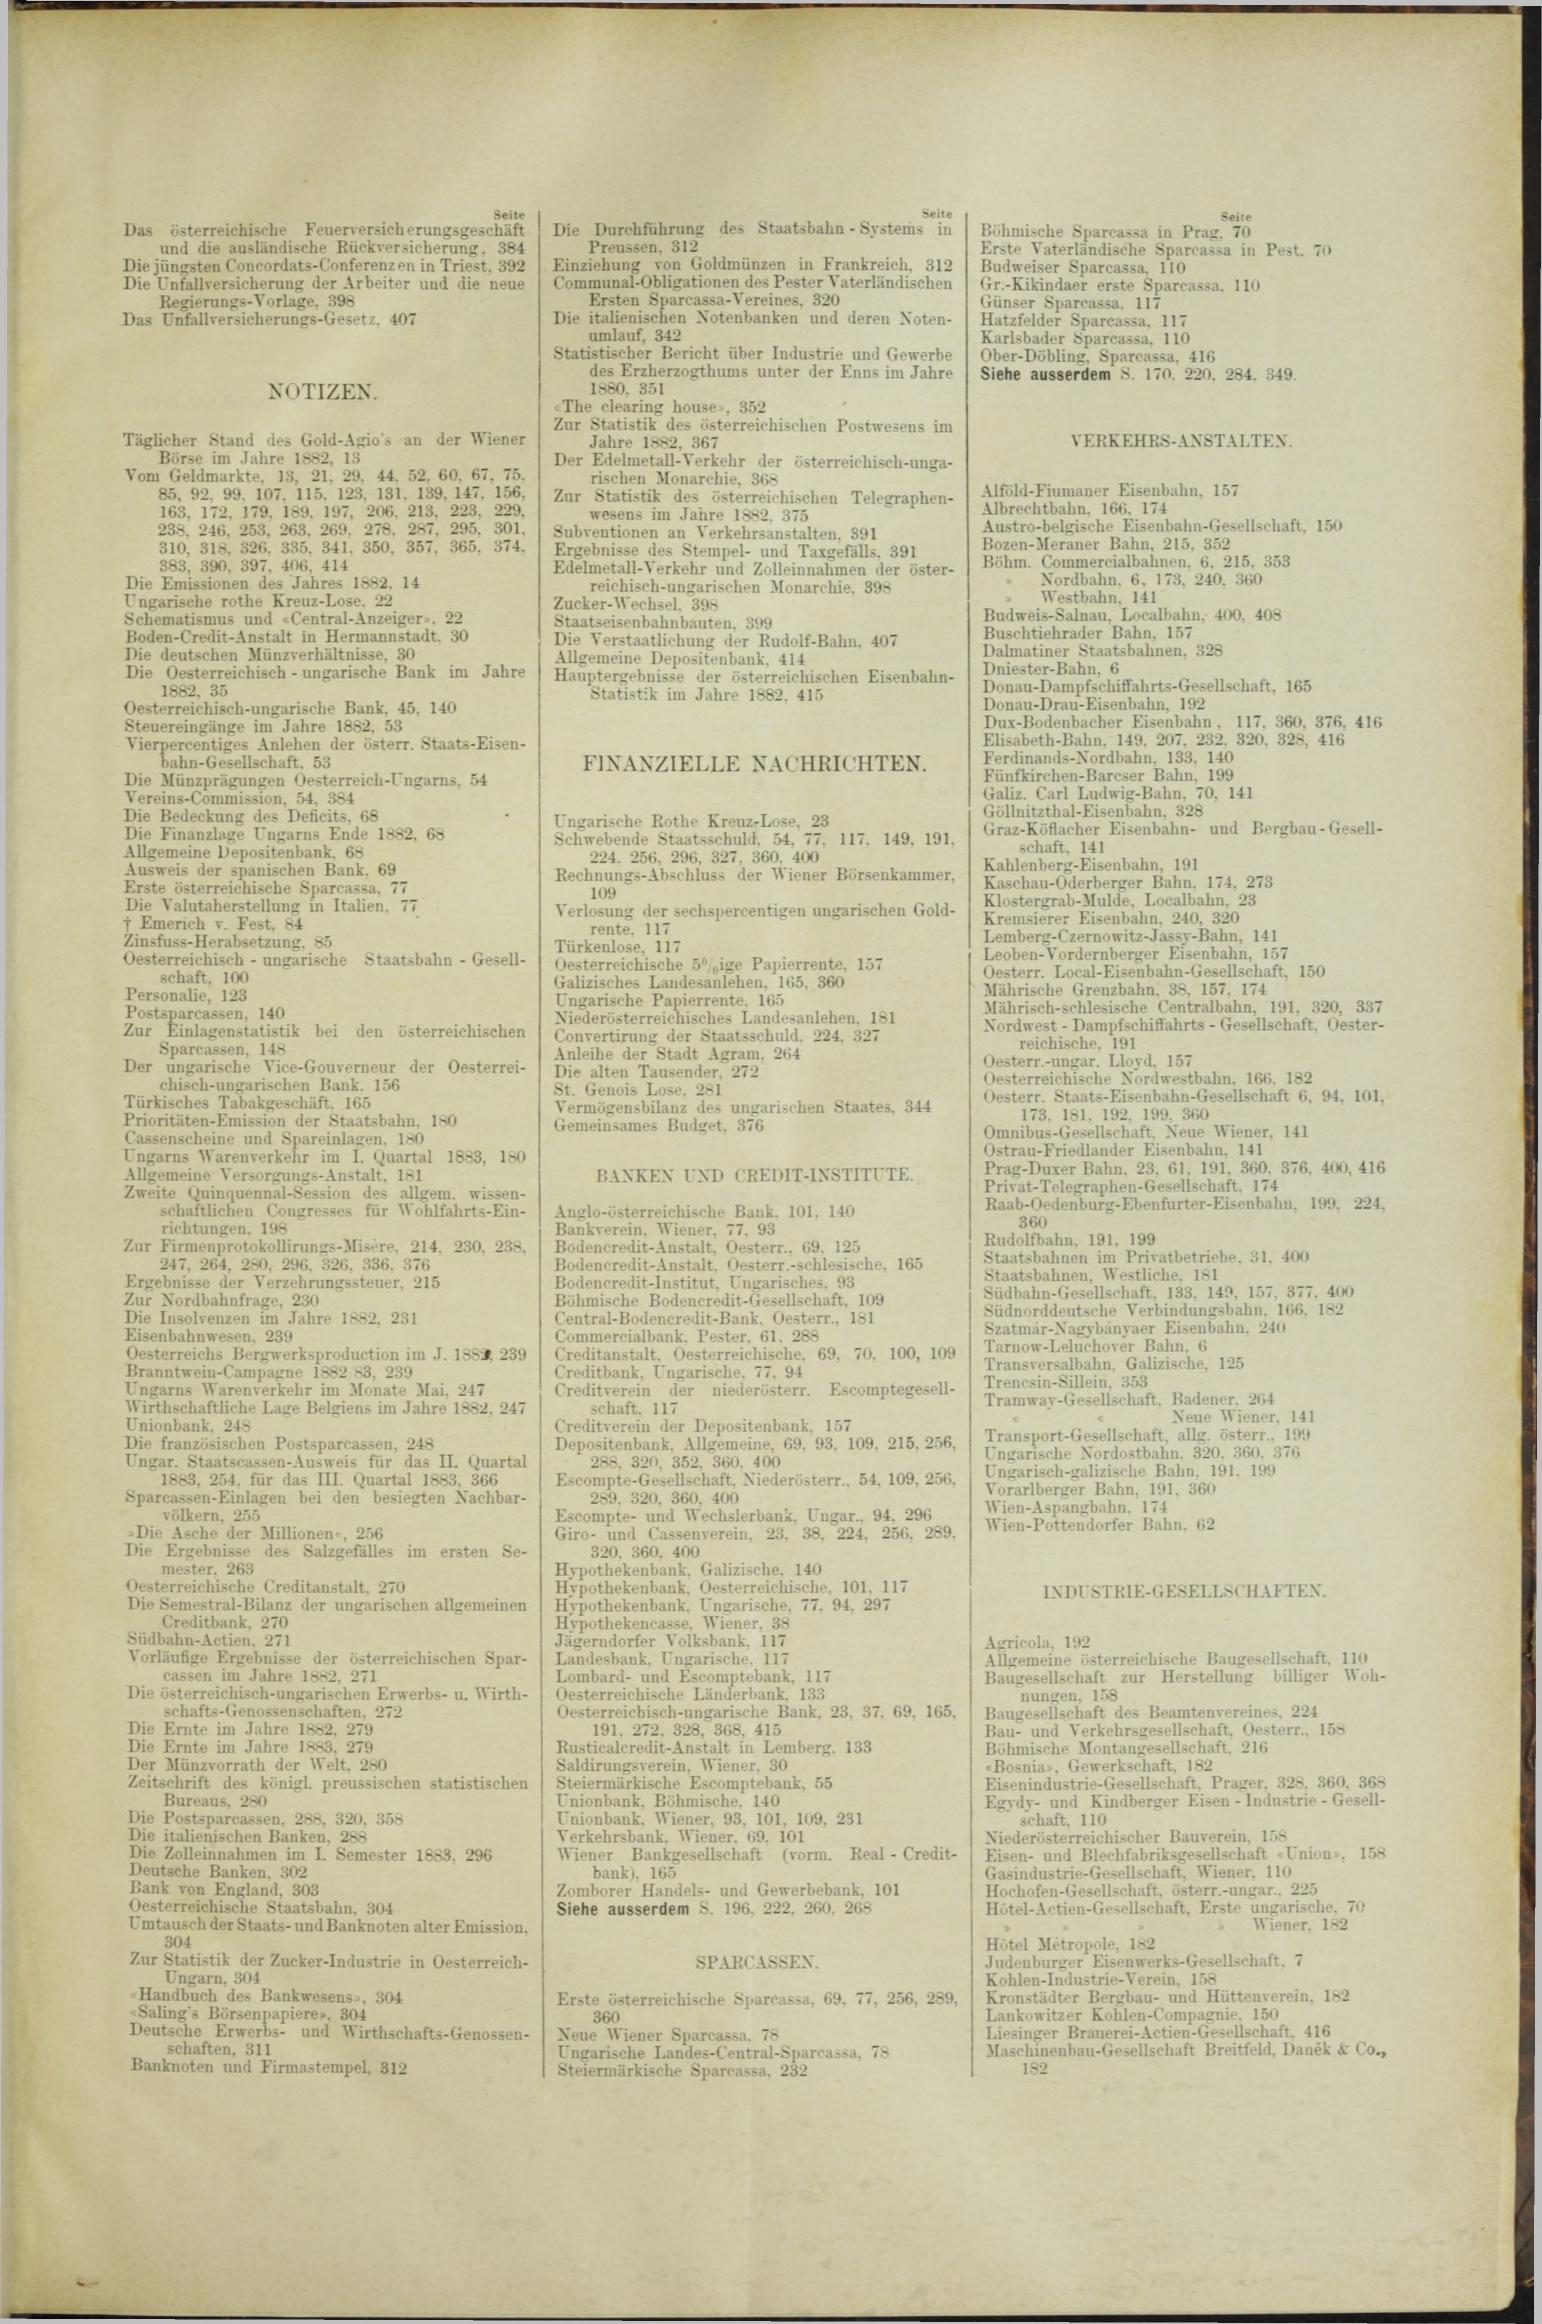 Der Tresor 26.04.1883 - Seite 11